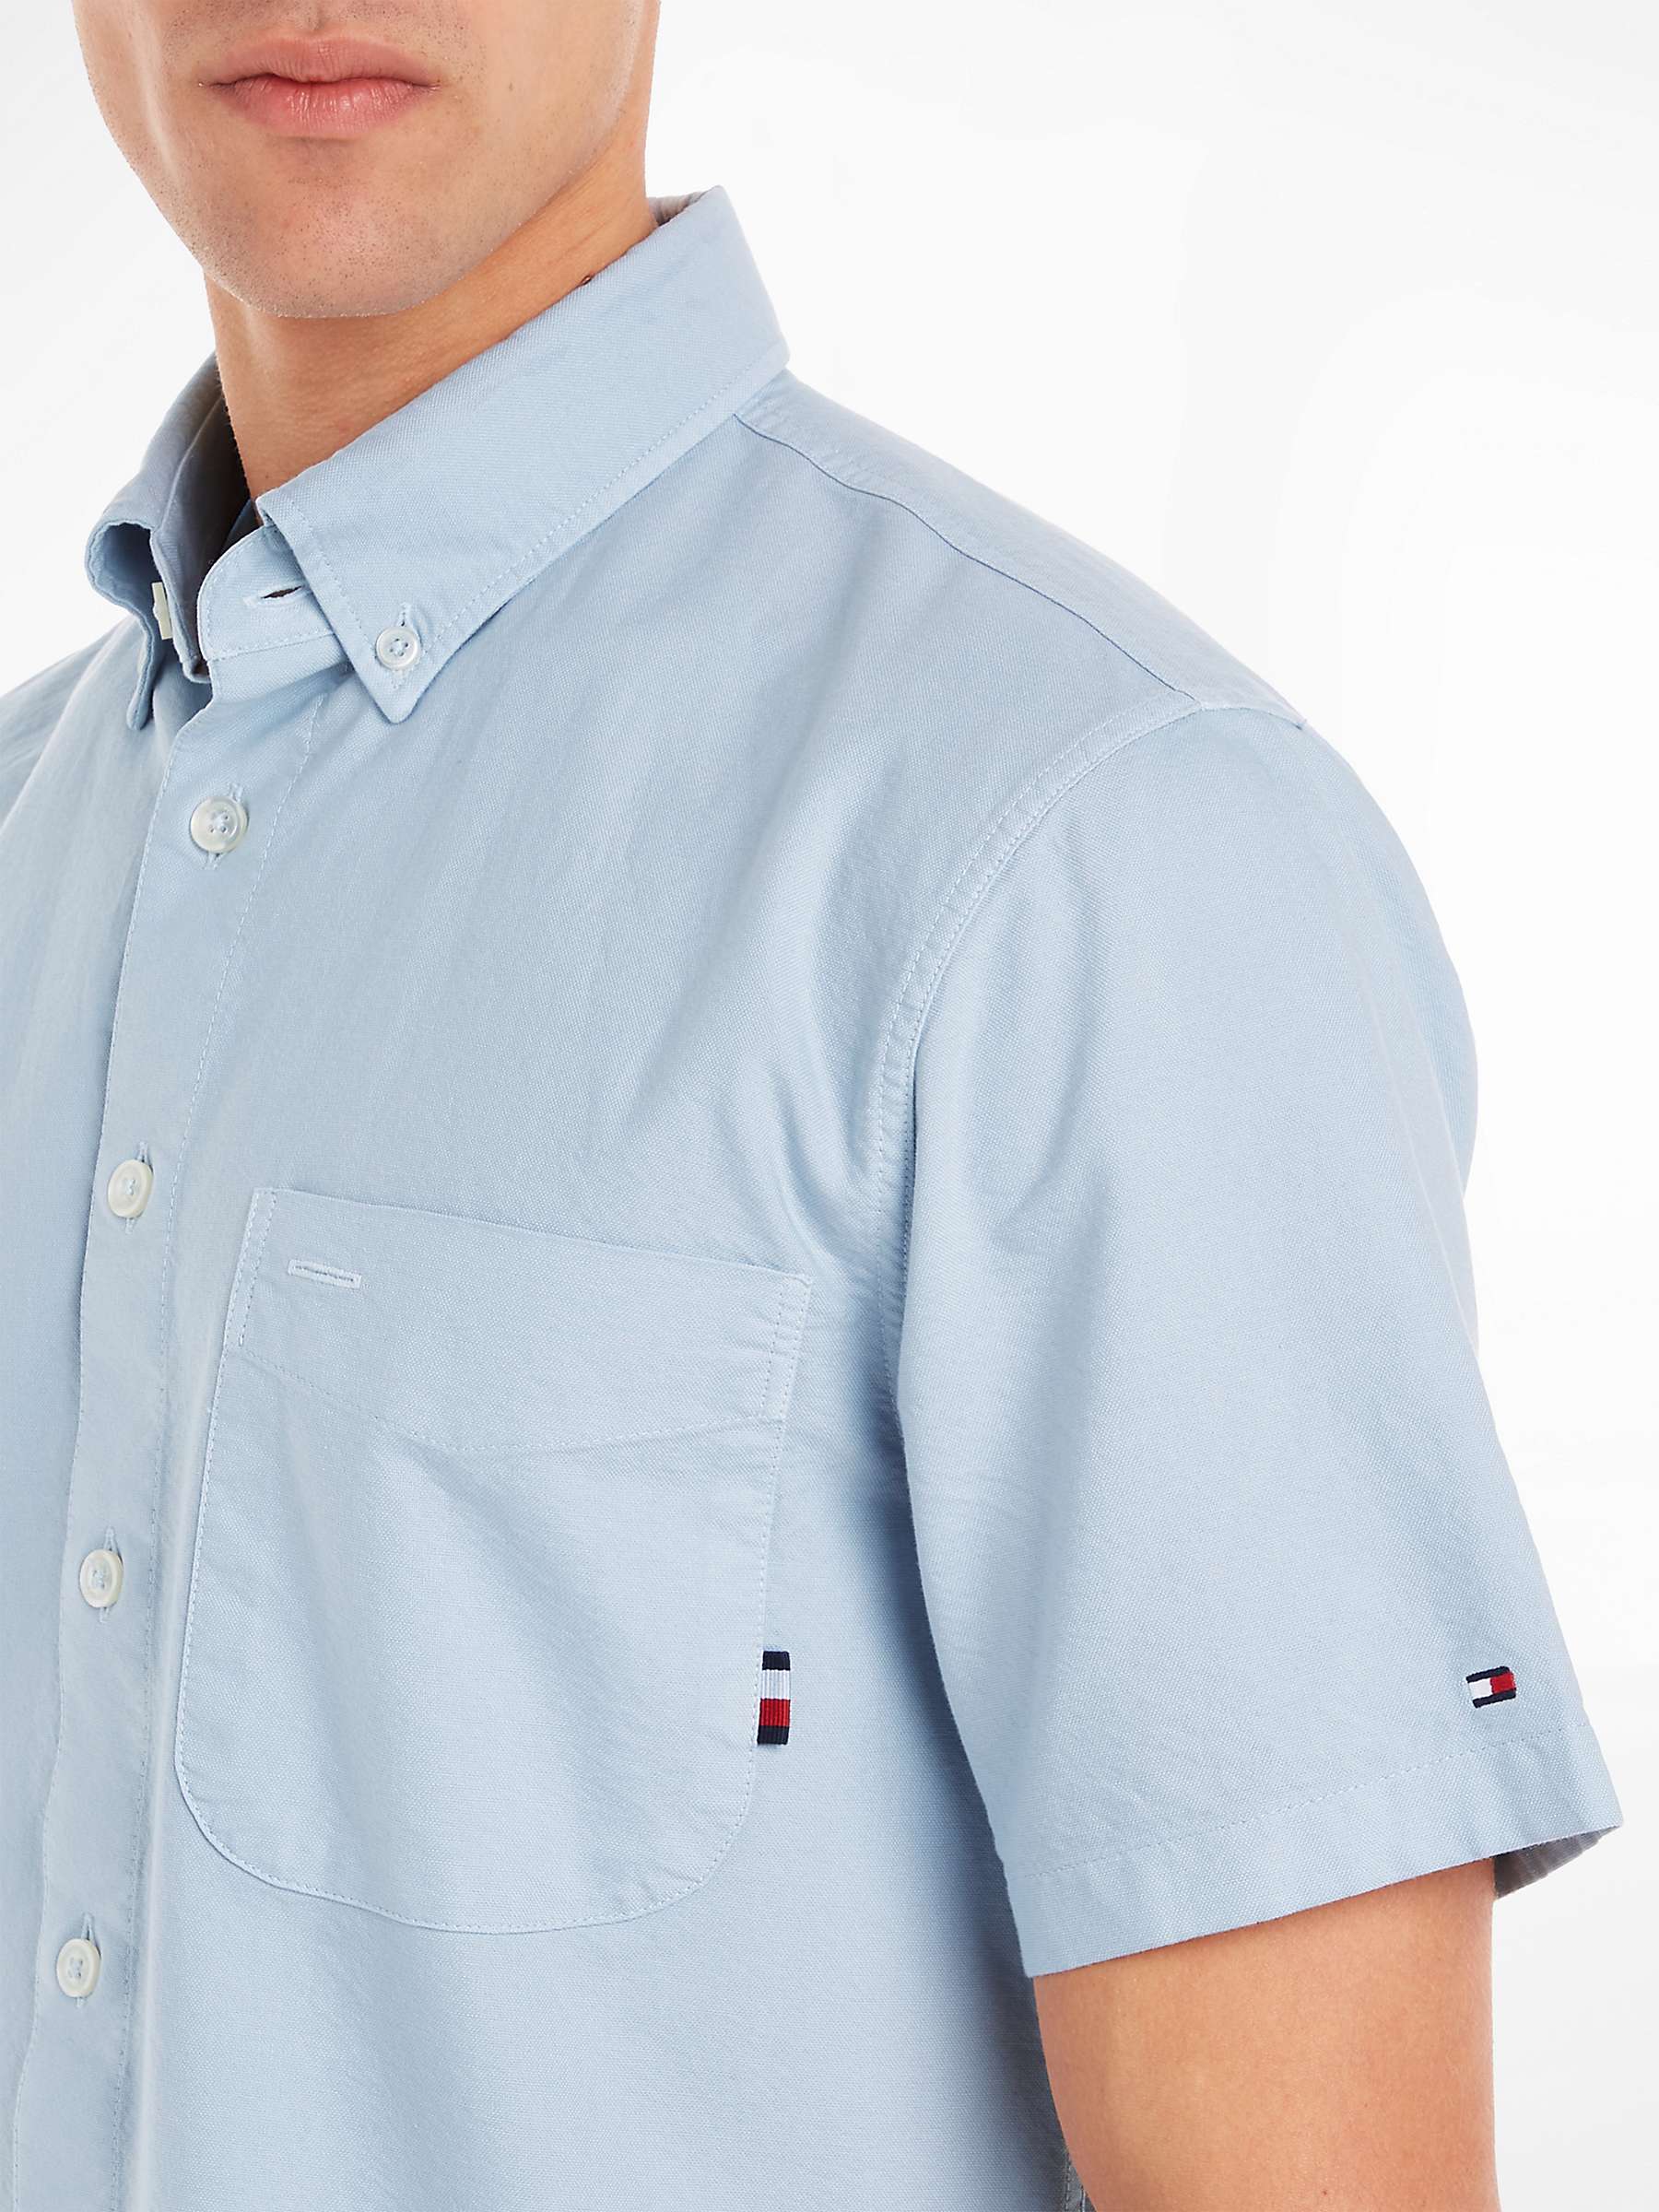 Buy Tommy Hilfiger Oxford Regular Fit Short Sleeve Shirt, Blue Online at johnlewis.com